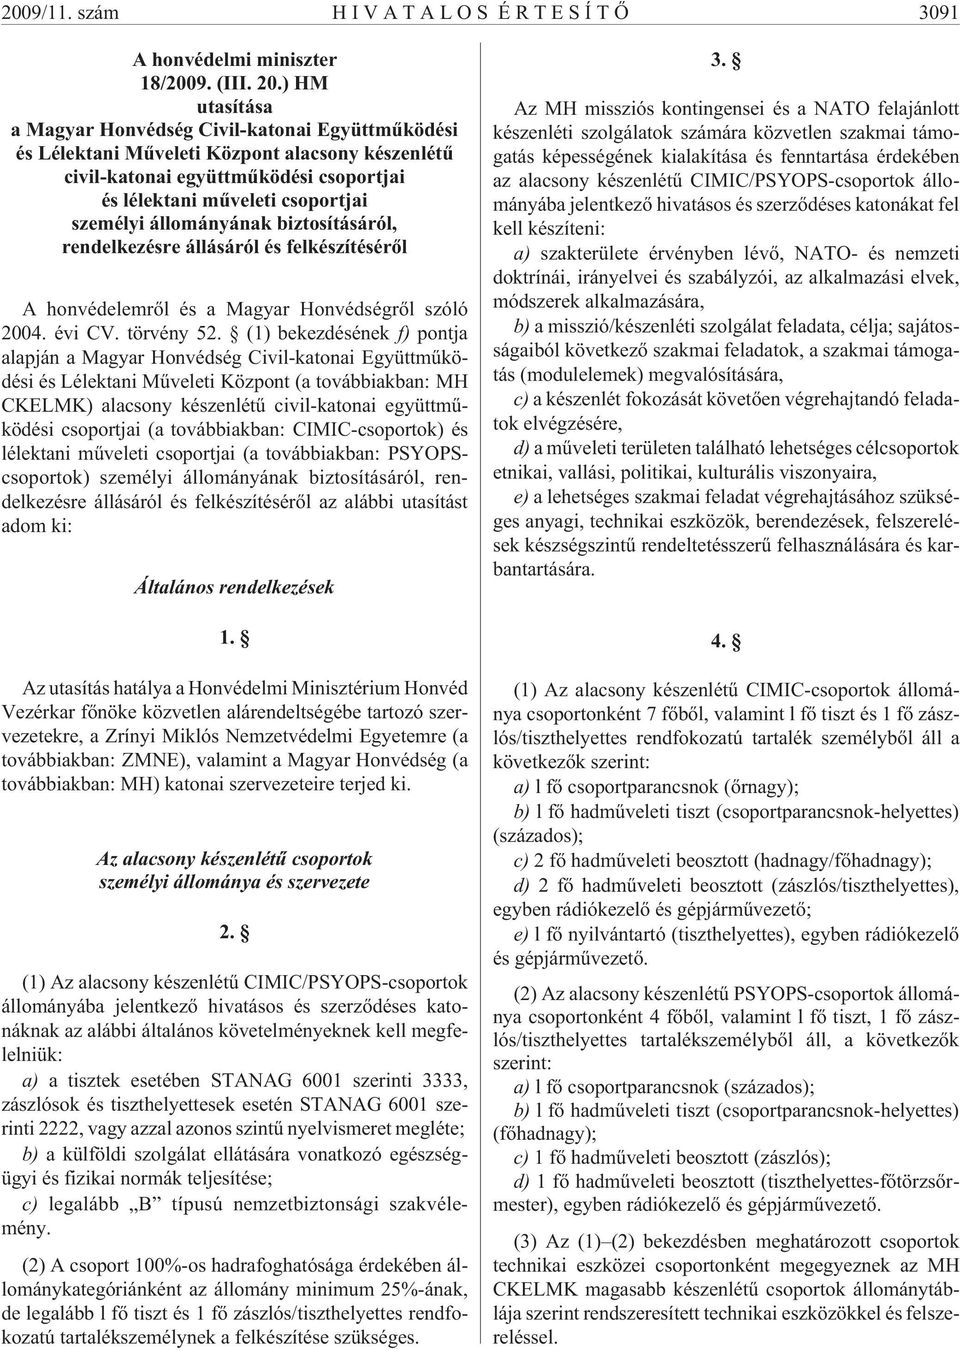 állományának biztosításáról, rendelkezésre állásáról és felkészítésérõl A honvédelemrõl és a Magyar Honvédségrõl szóló 2004. évi CV. törvény 52.